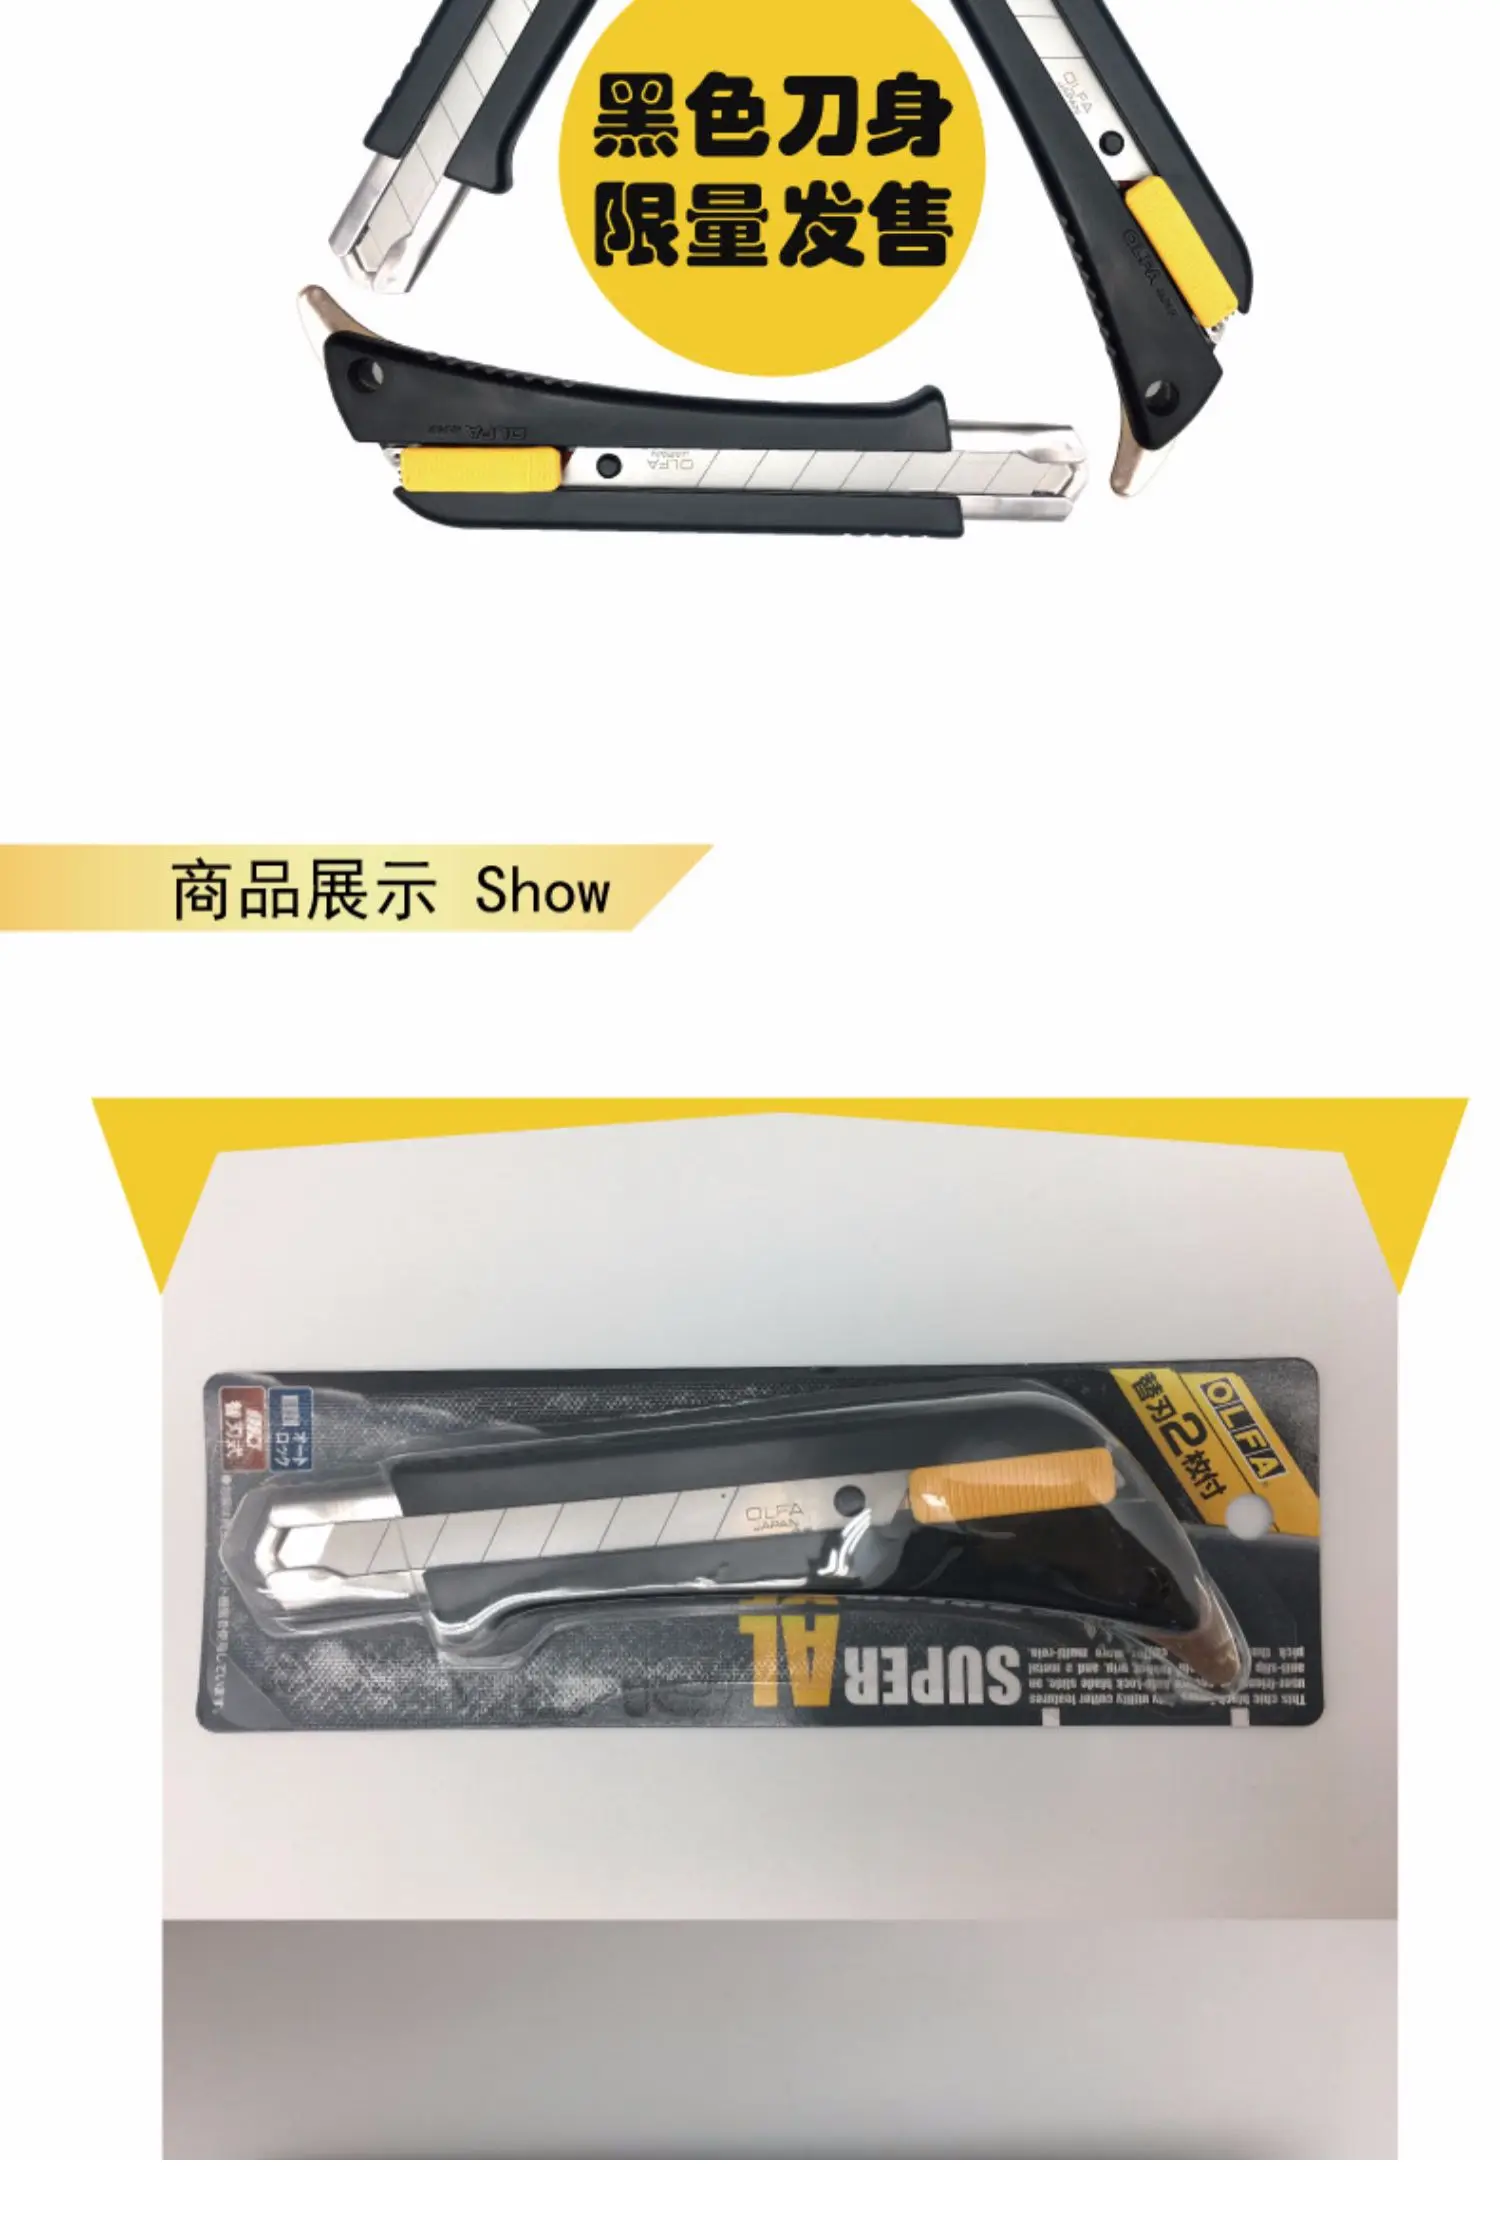 OLFA Япония импортируется, экономичный черный 18 мм сверхмощная функция нож, CS175B продвижение отправить 2 лезвия